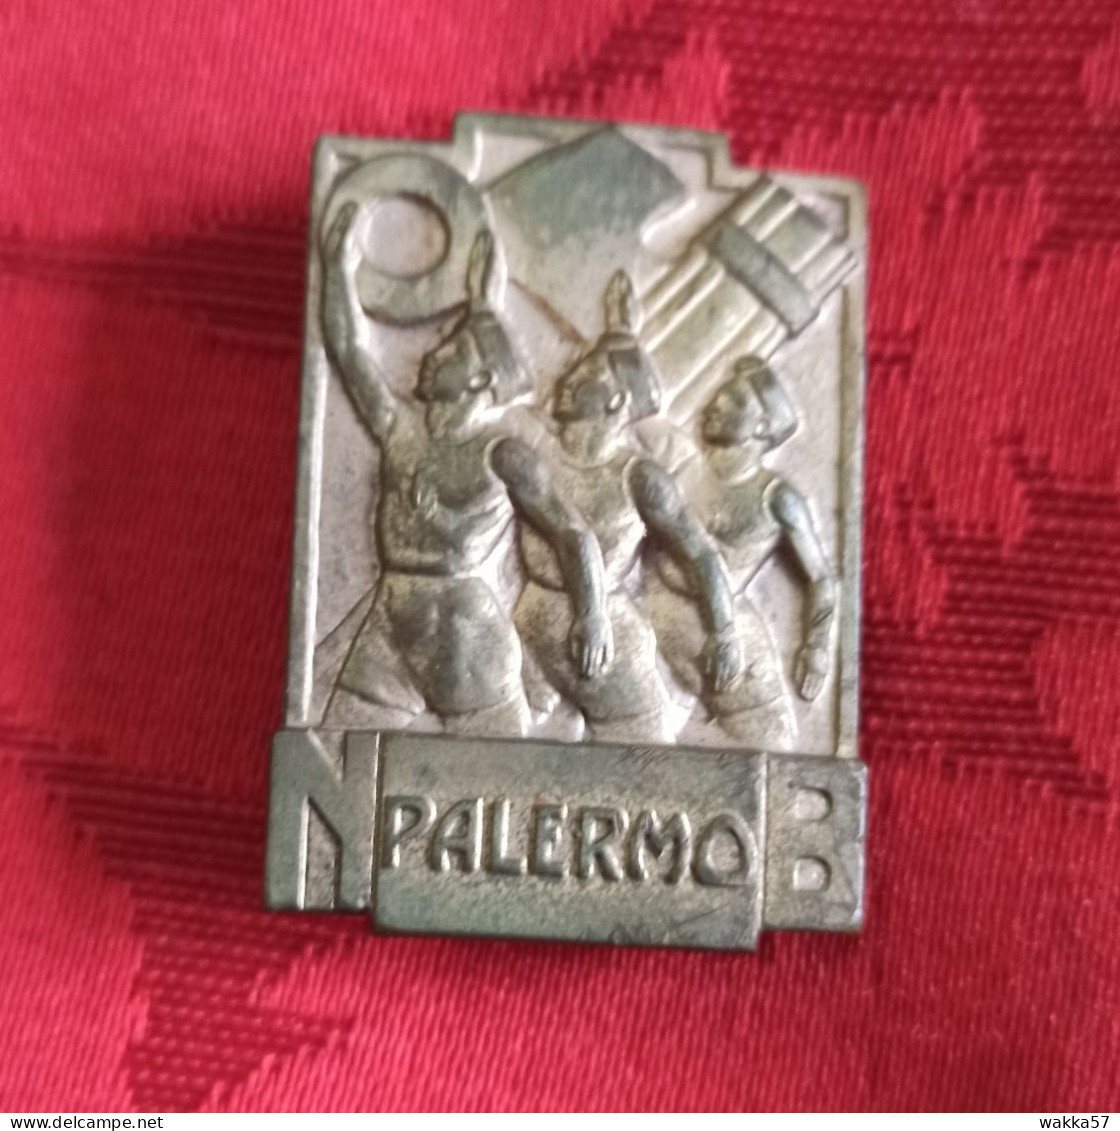 Distintivo Spilla ONB Palermo - Opera Nazionale Balilla - Mortillaro - Militares